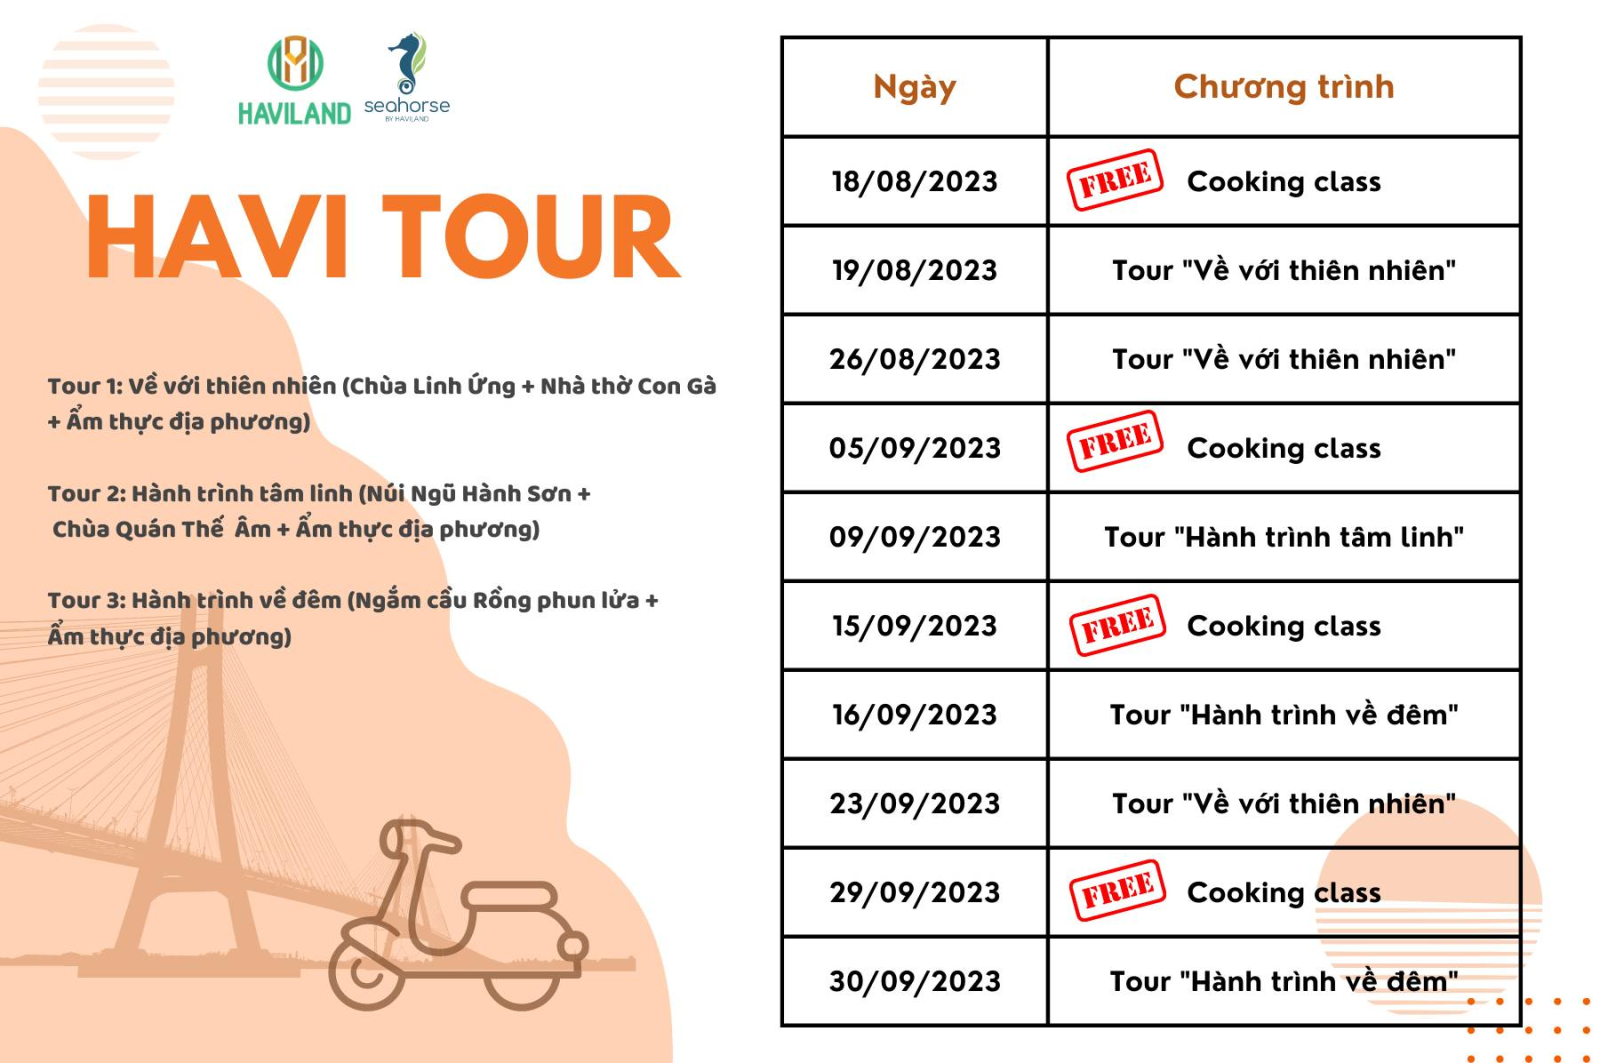 Lịch trình Havi Tour kết hợp Cooking Class được áp dụng mọi cơ sở lưu trú tại Haviland